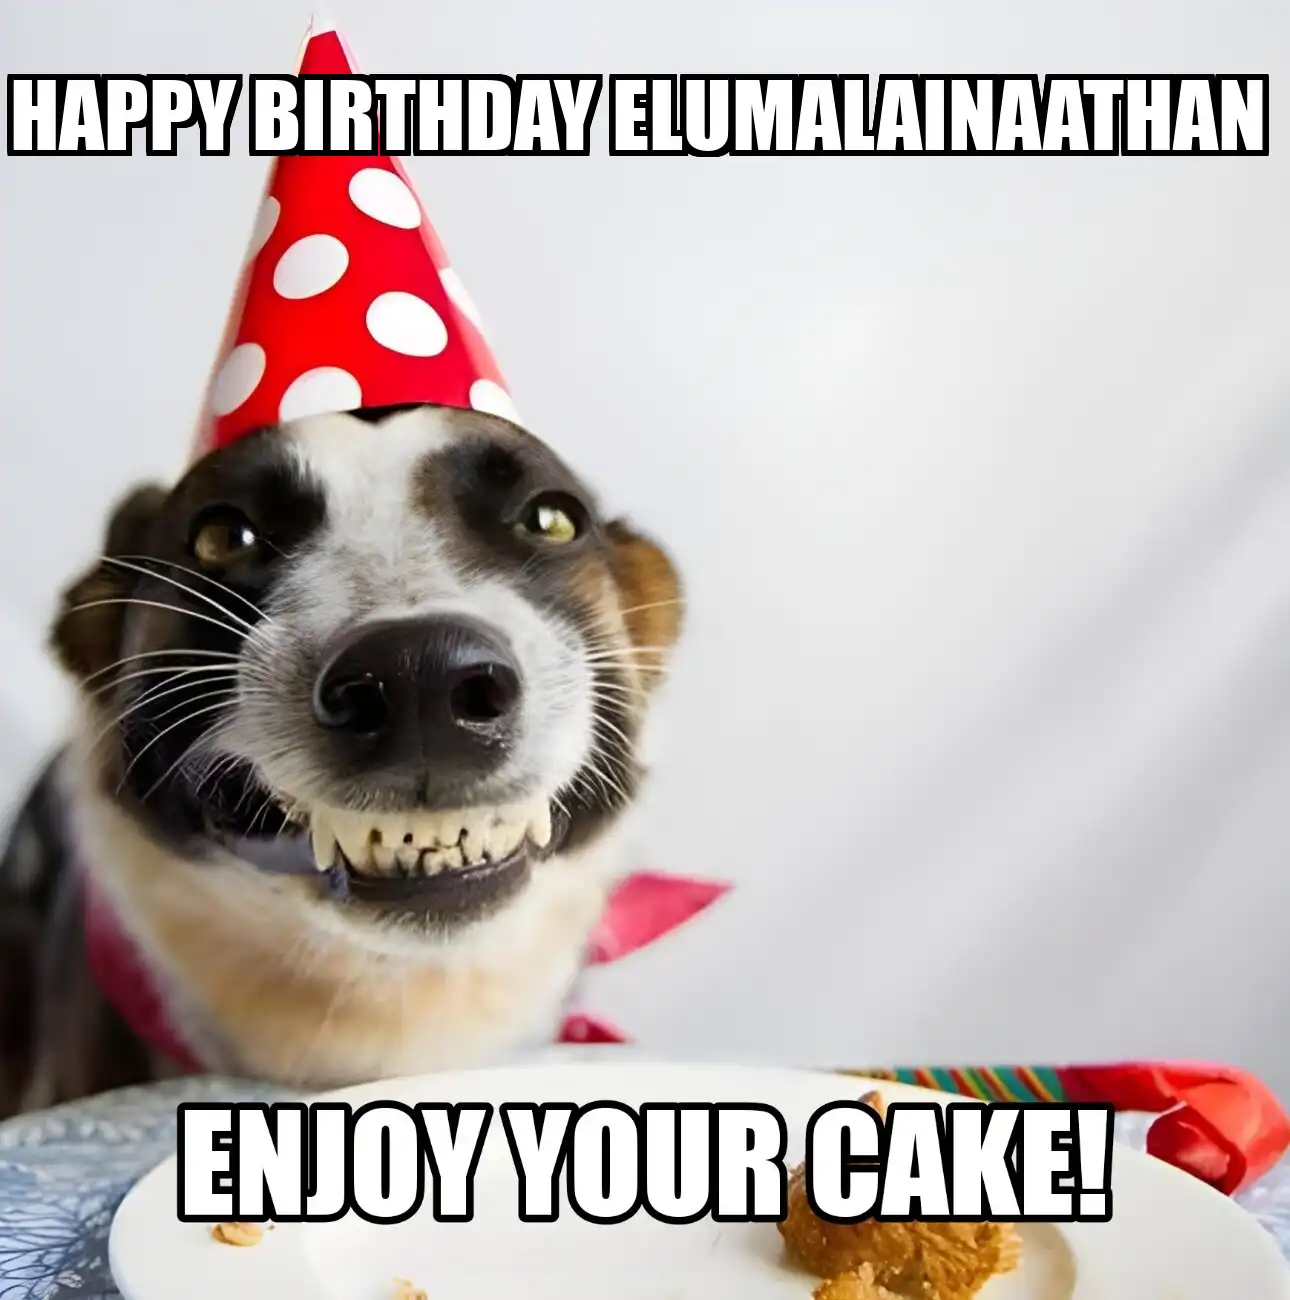 Happy Birthday Elumalainaathan Enjoy Your Cake Dog Meme